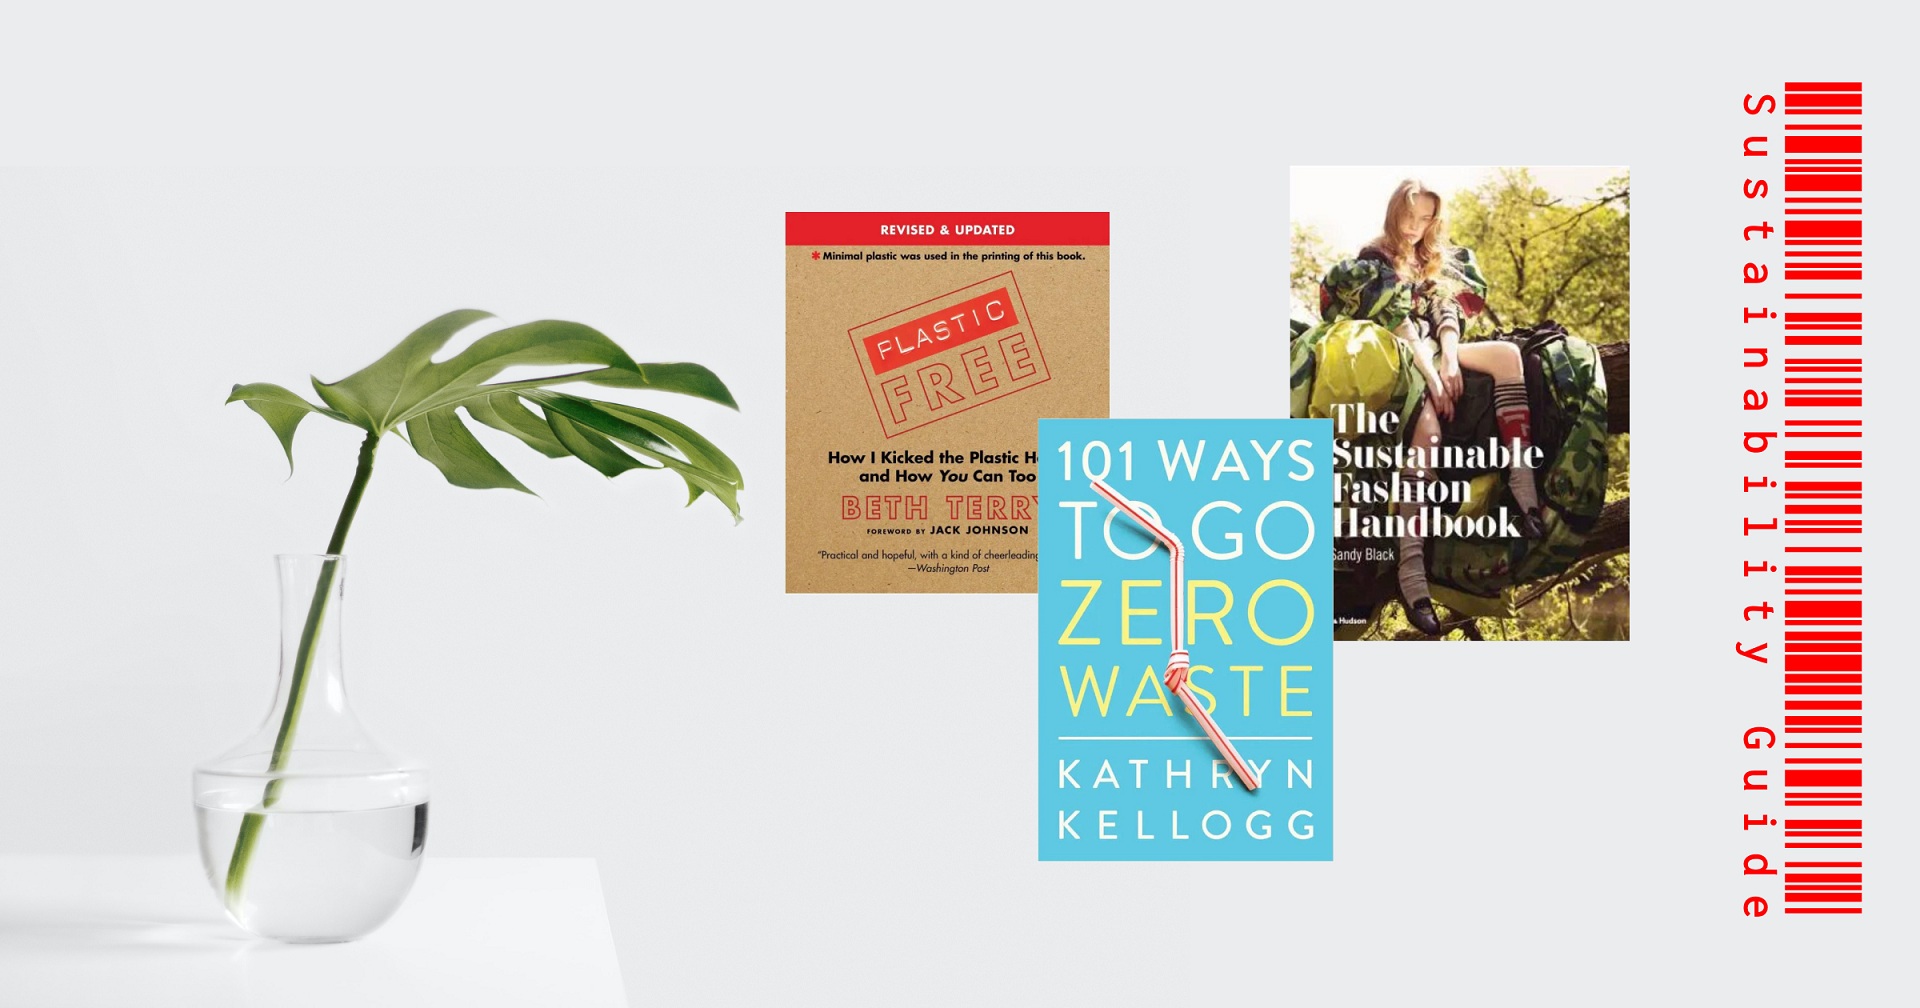 Sustainability Guide: 10 книг про усвідомлене споживання, які варто прочитати кожному-Фото 2